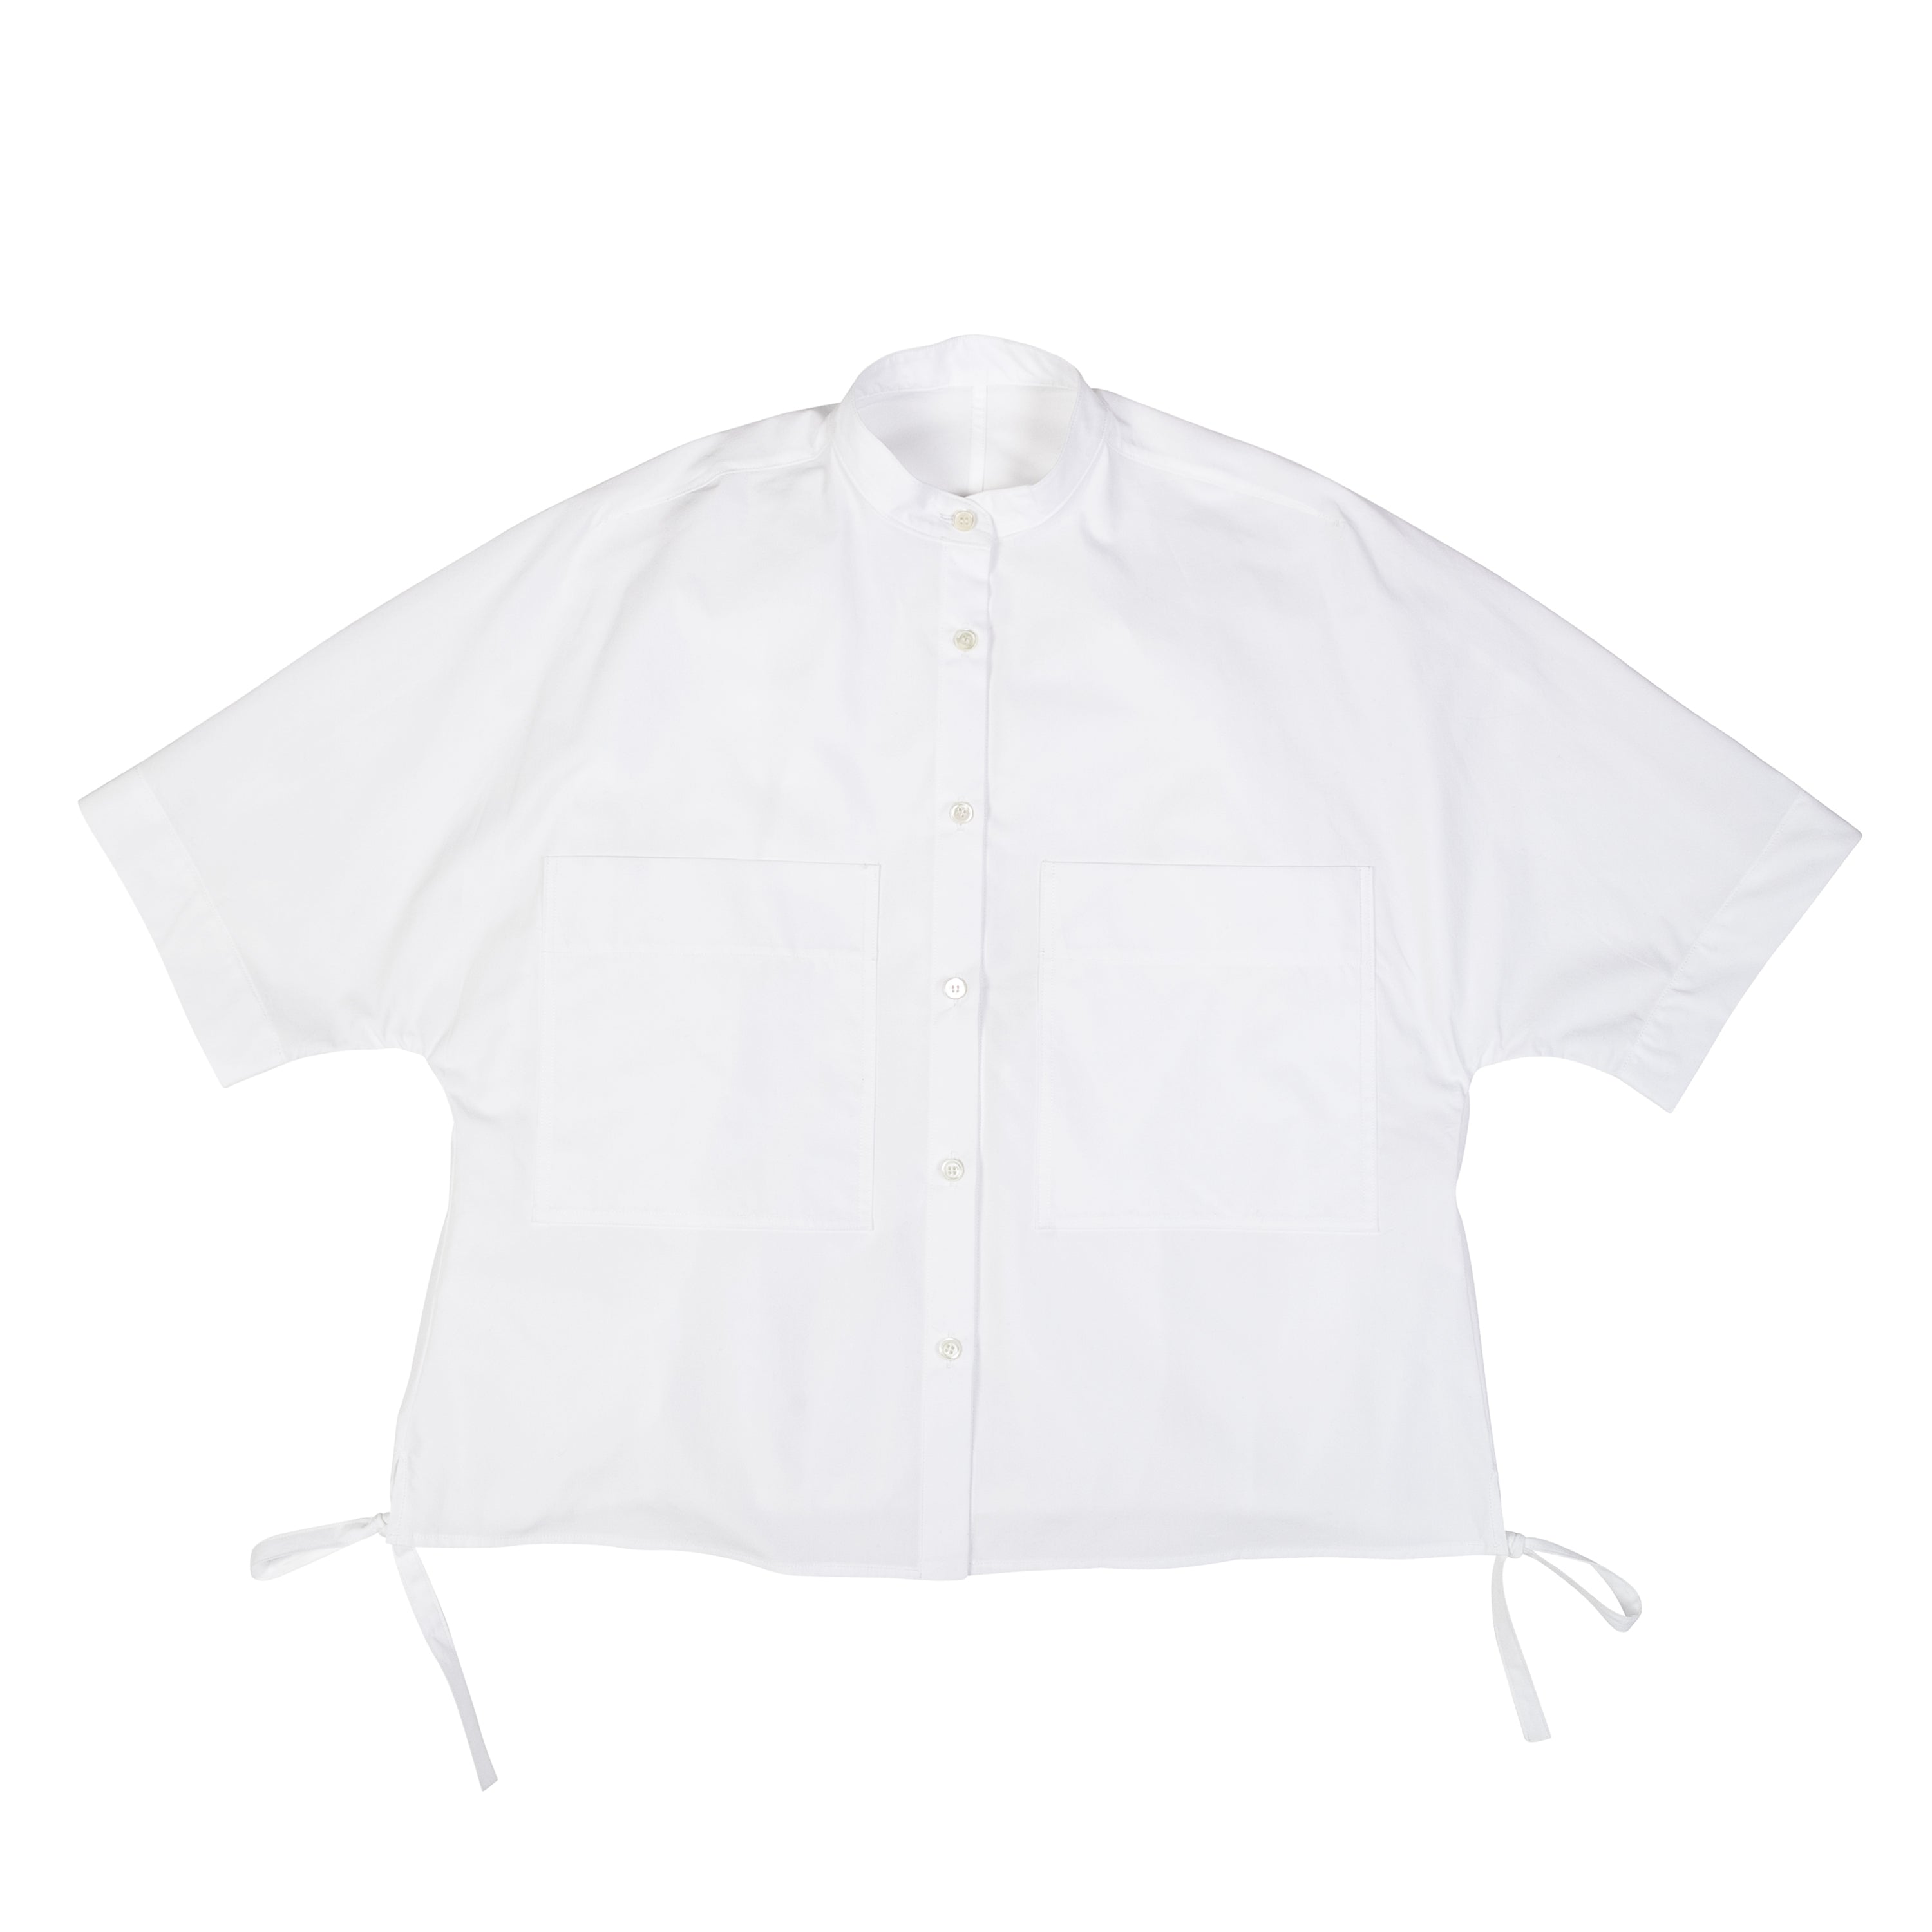 Kimono Bubble Shirt Egyptian Cotton White - PREORDER